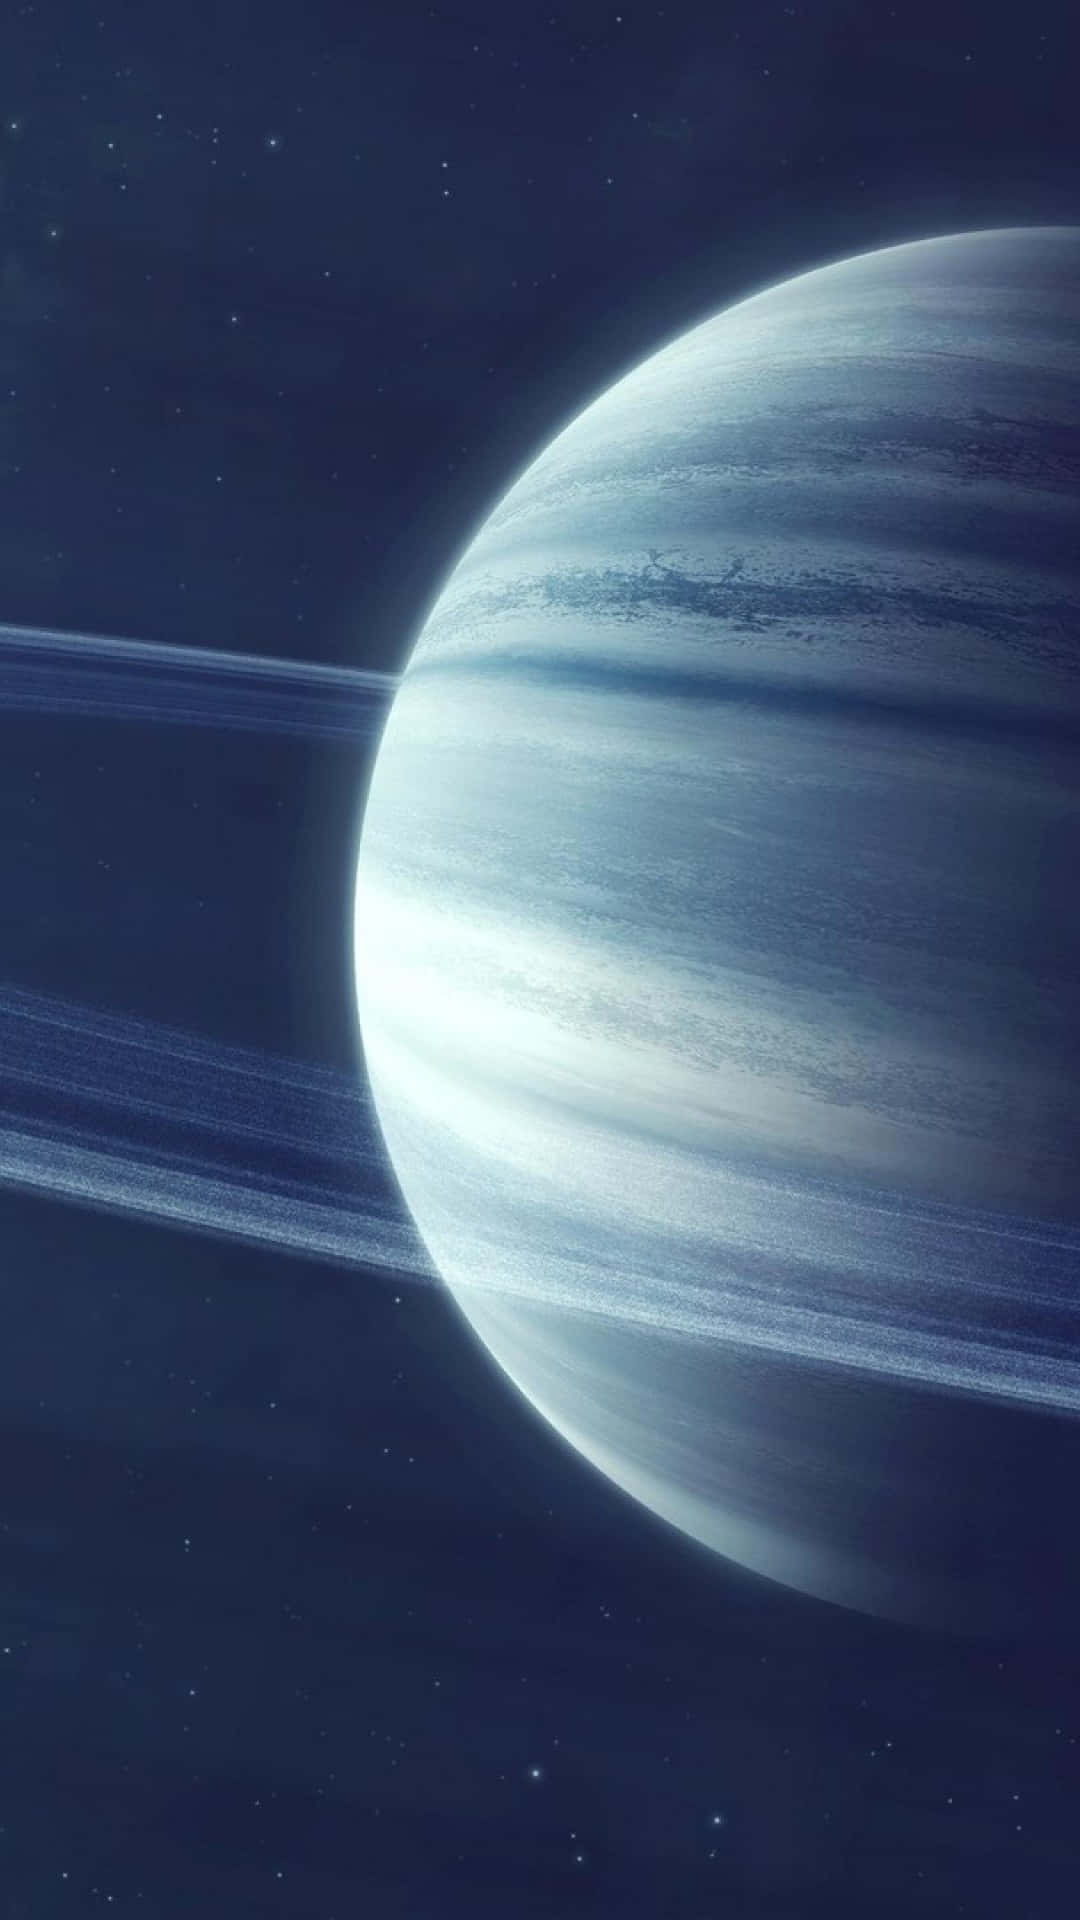 Ilmaestoso Saturno Nello Spazio Esterno